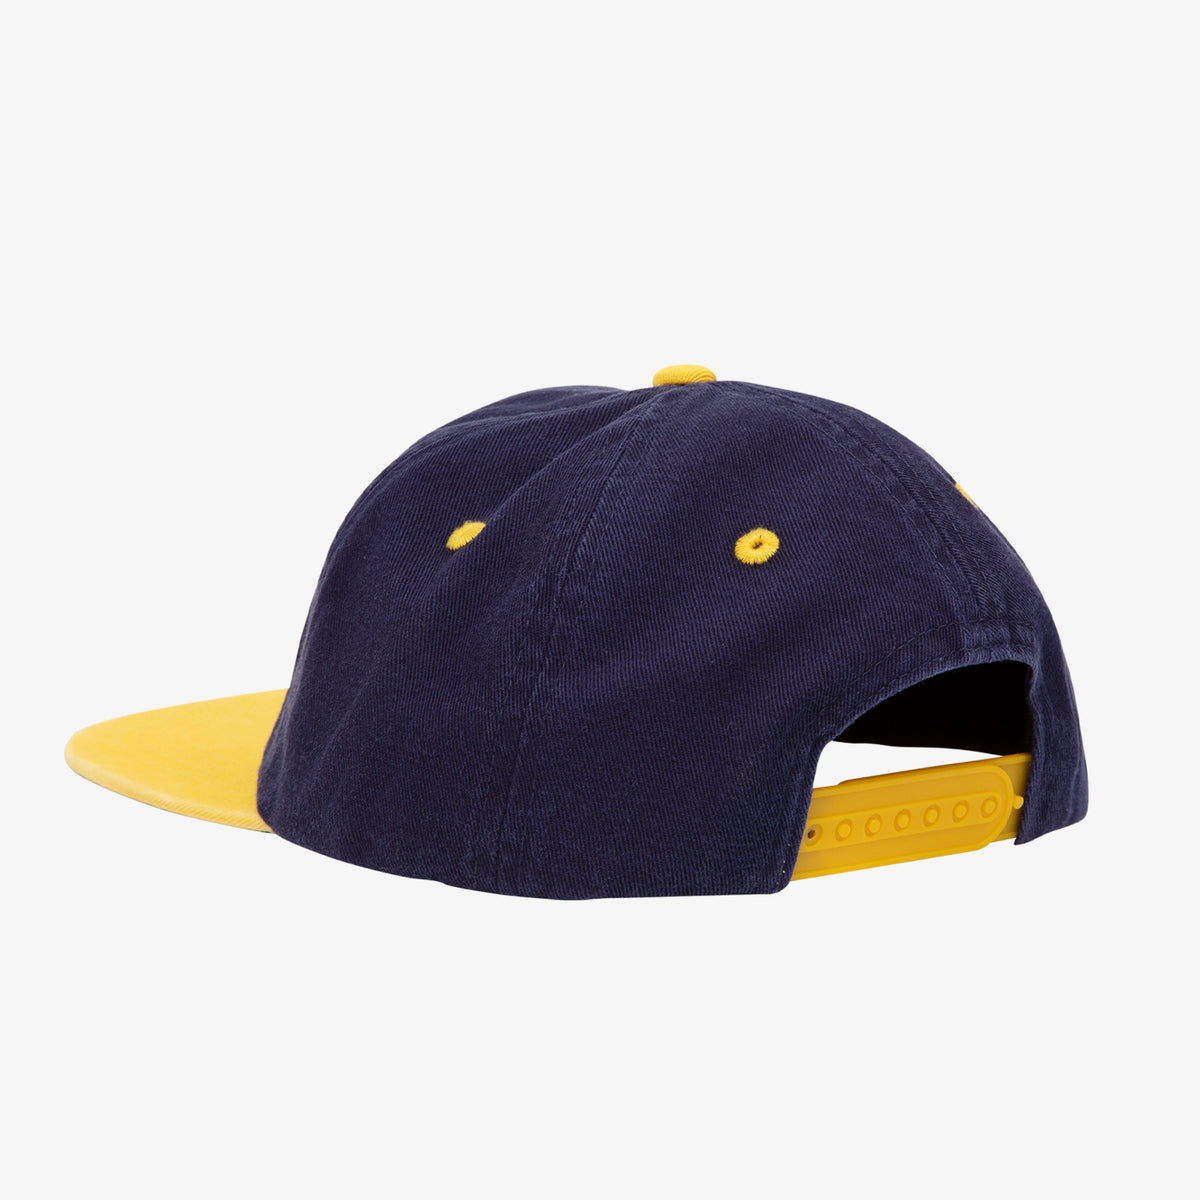 School Of Business Hat (Navy/Yellow)